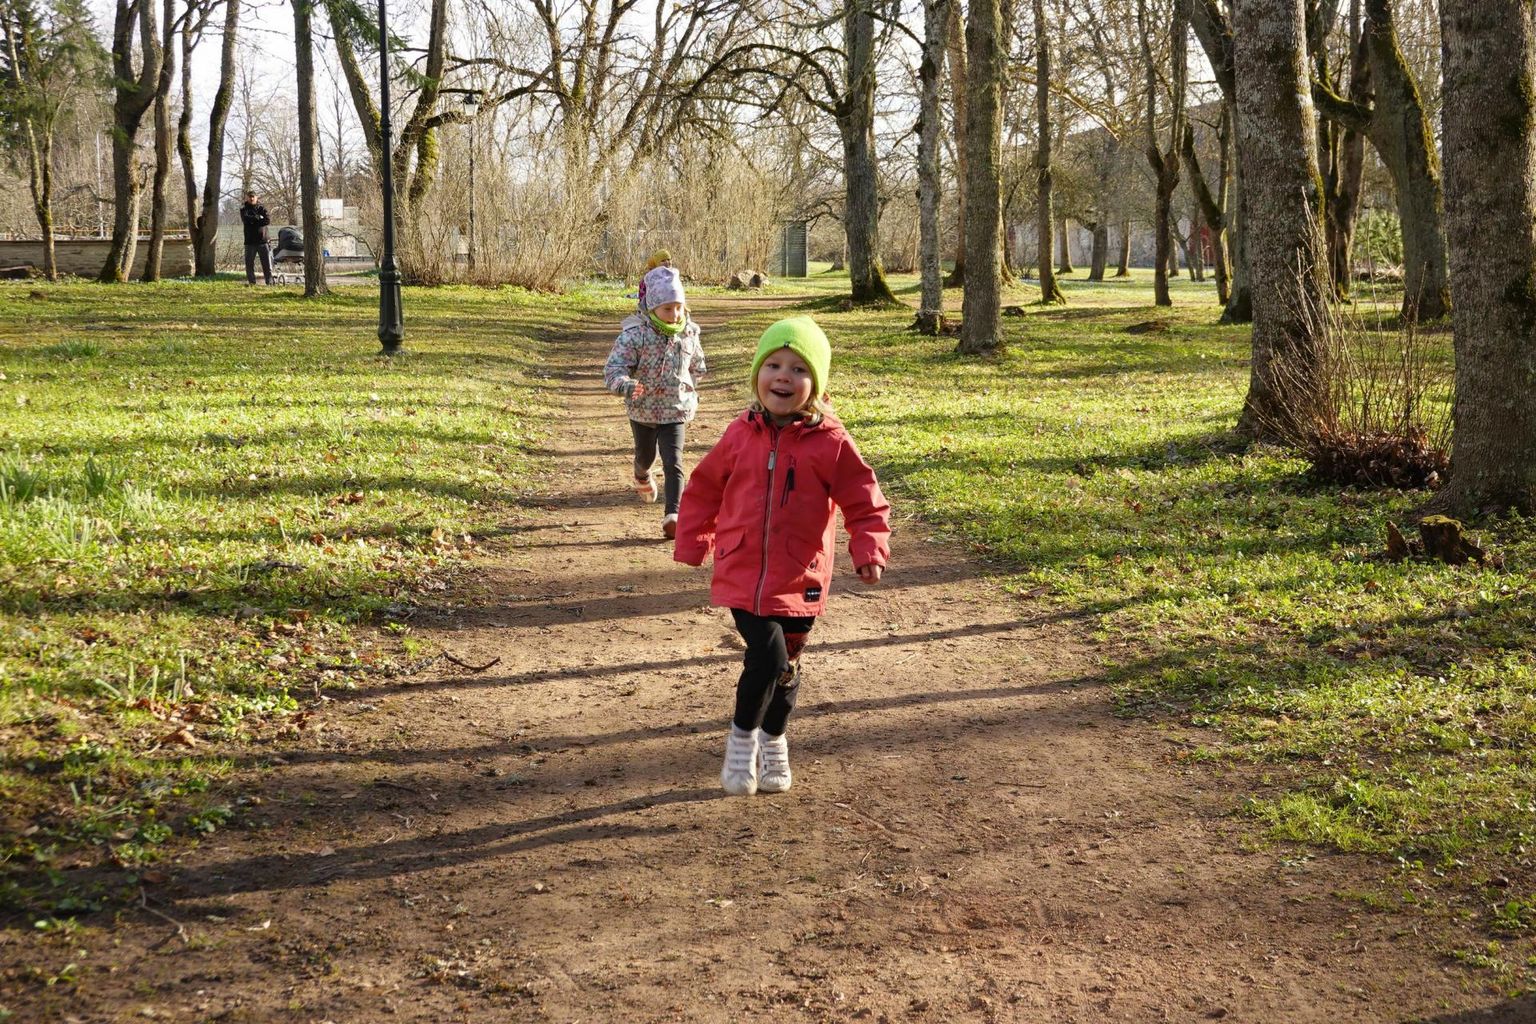 Lisaks igapäevasele kasutusele korraldati kevadel Roosna-Alliku mõisapargis mudilastele mõeldud pargijooks, kus lapsed selgitasid, kes on väledaim.